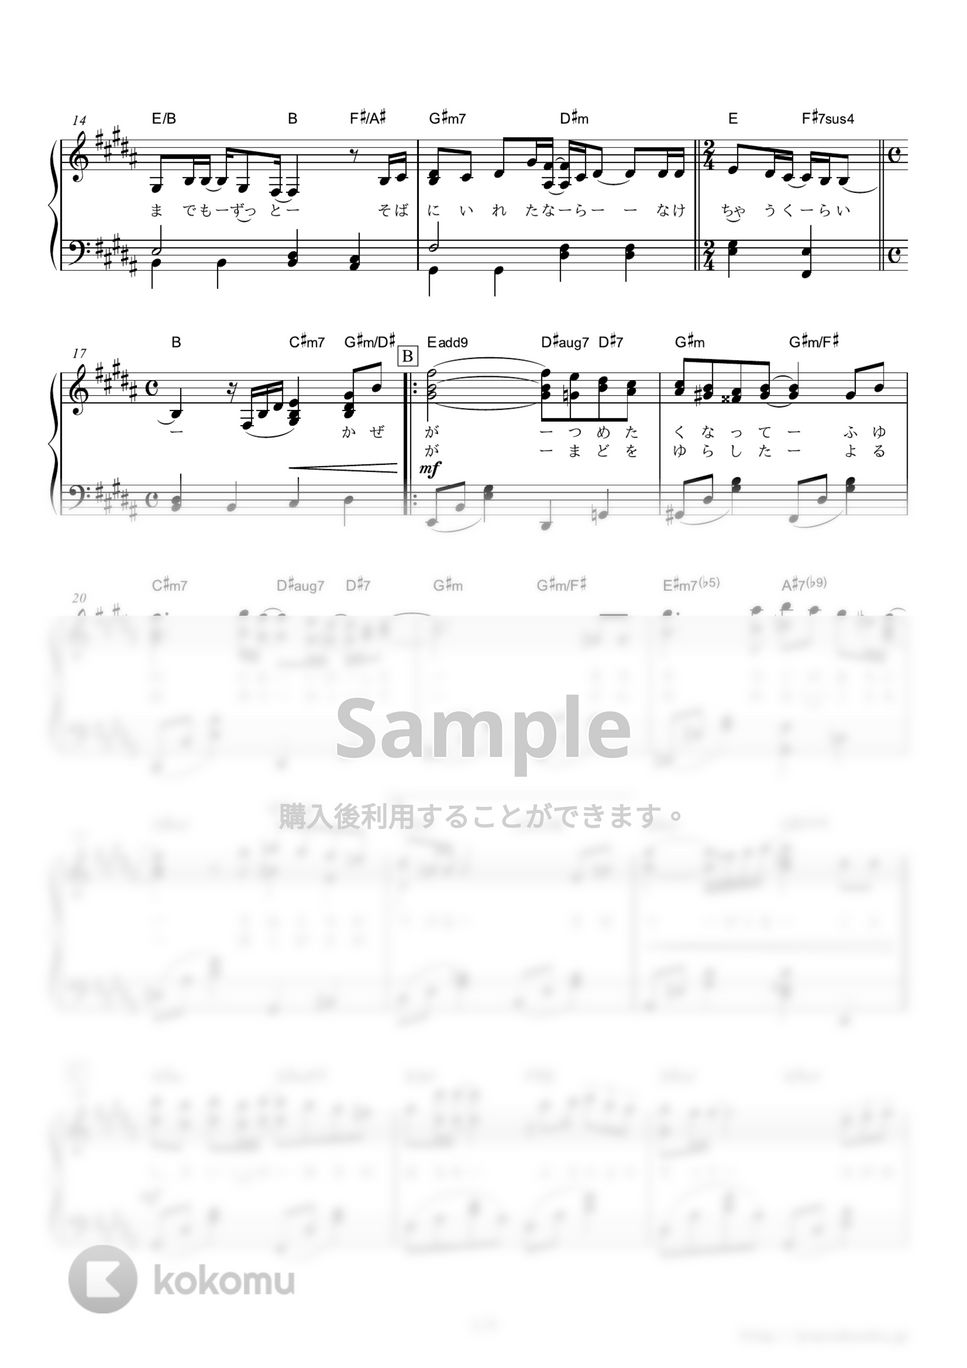 中島美嘉 - 雪の華 (明治製菓「boda」「galbo」のCMソング) by ピアノの本棚